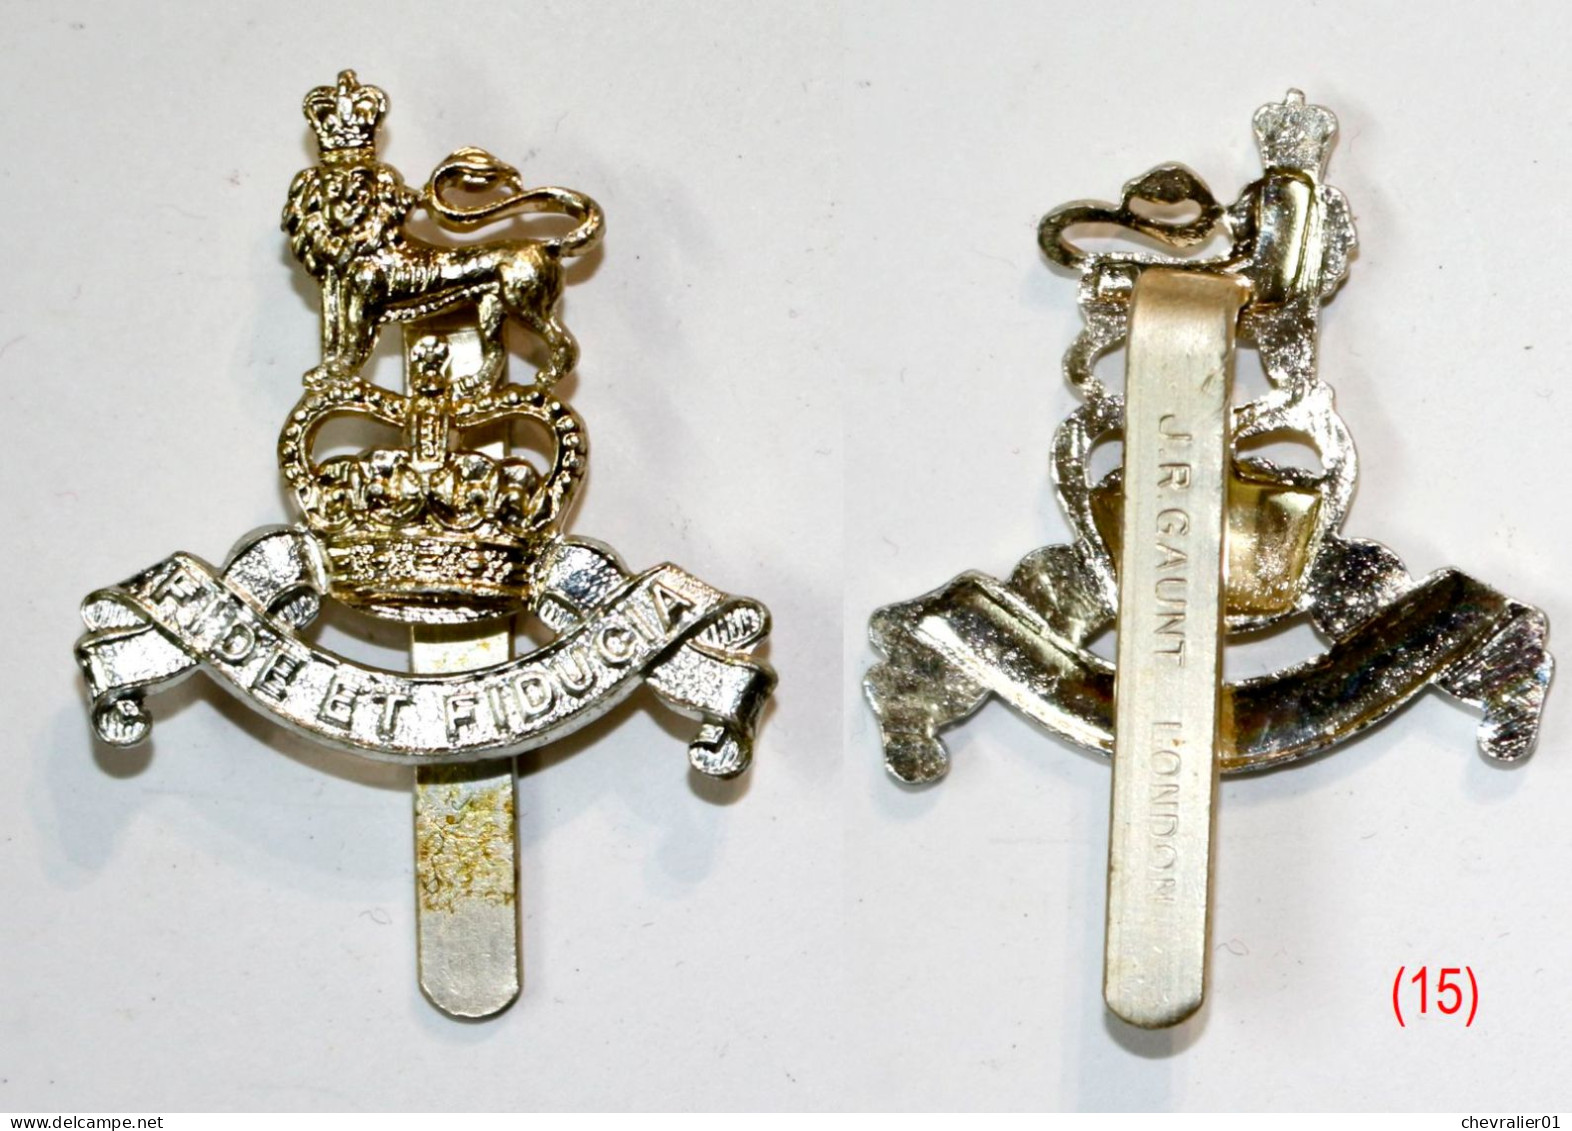 22 Insignes de béret de l’armée anglaise – cap badge